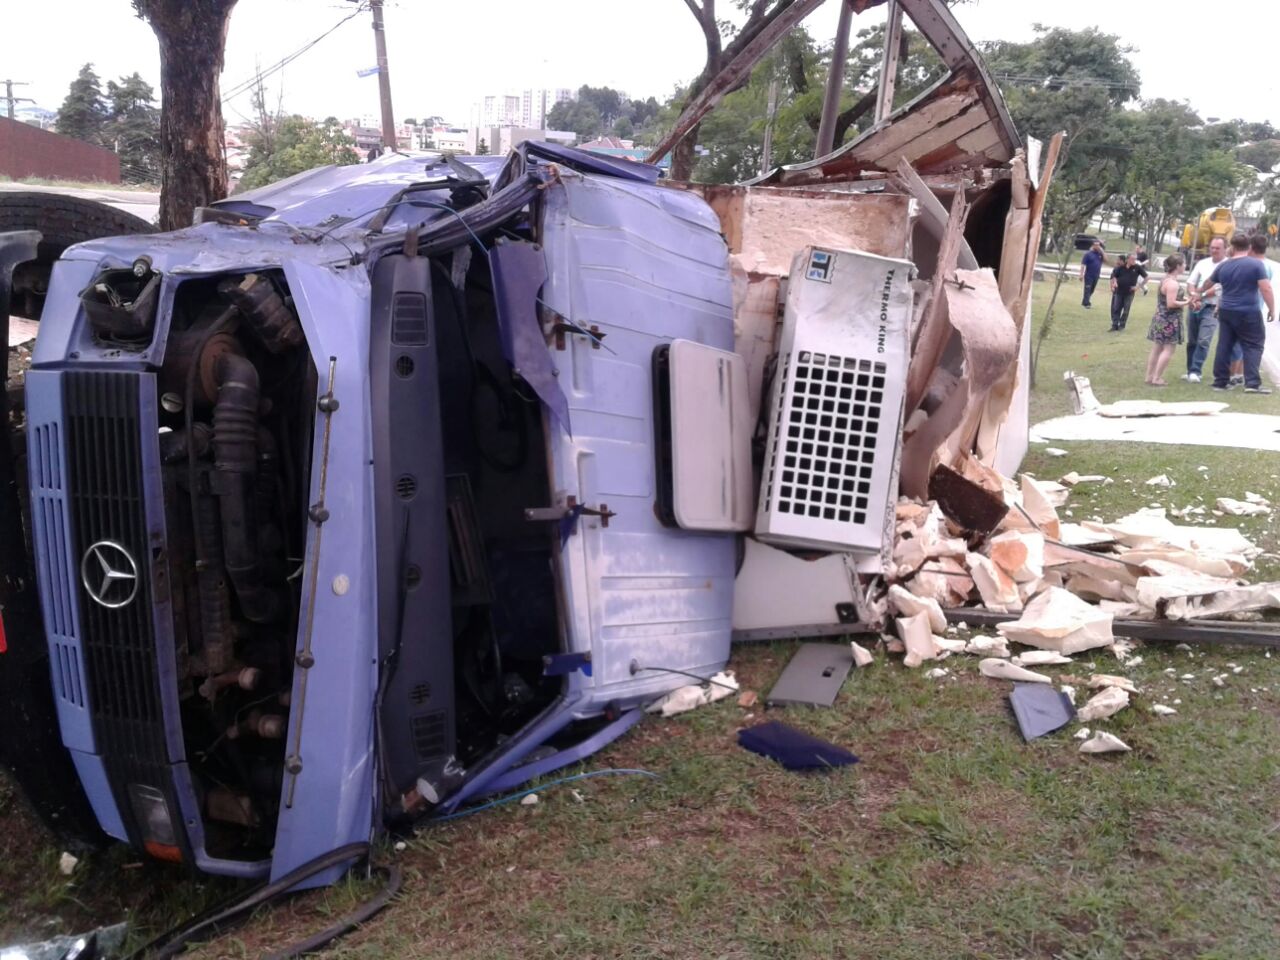 Pancada deixa caminhão destruído em avenida de Curitiba - Tribuna do Paraná (Inscrição) (Blogue)